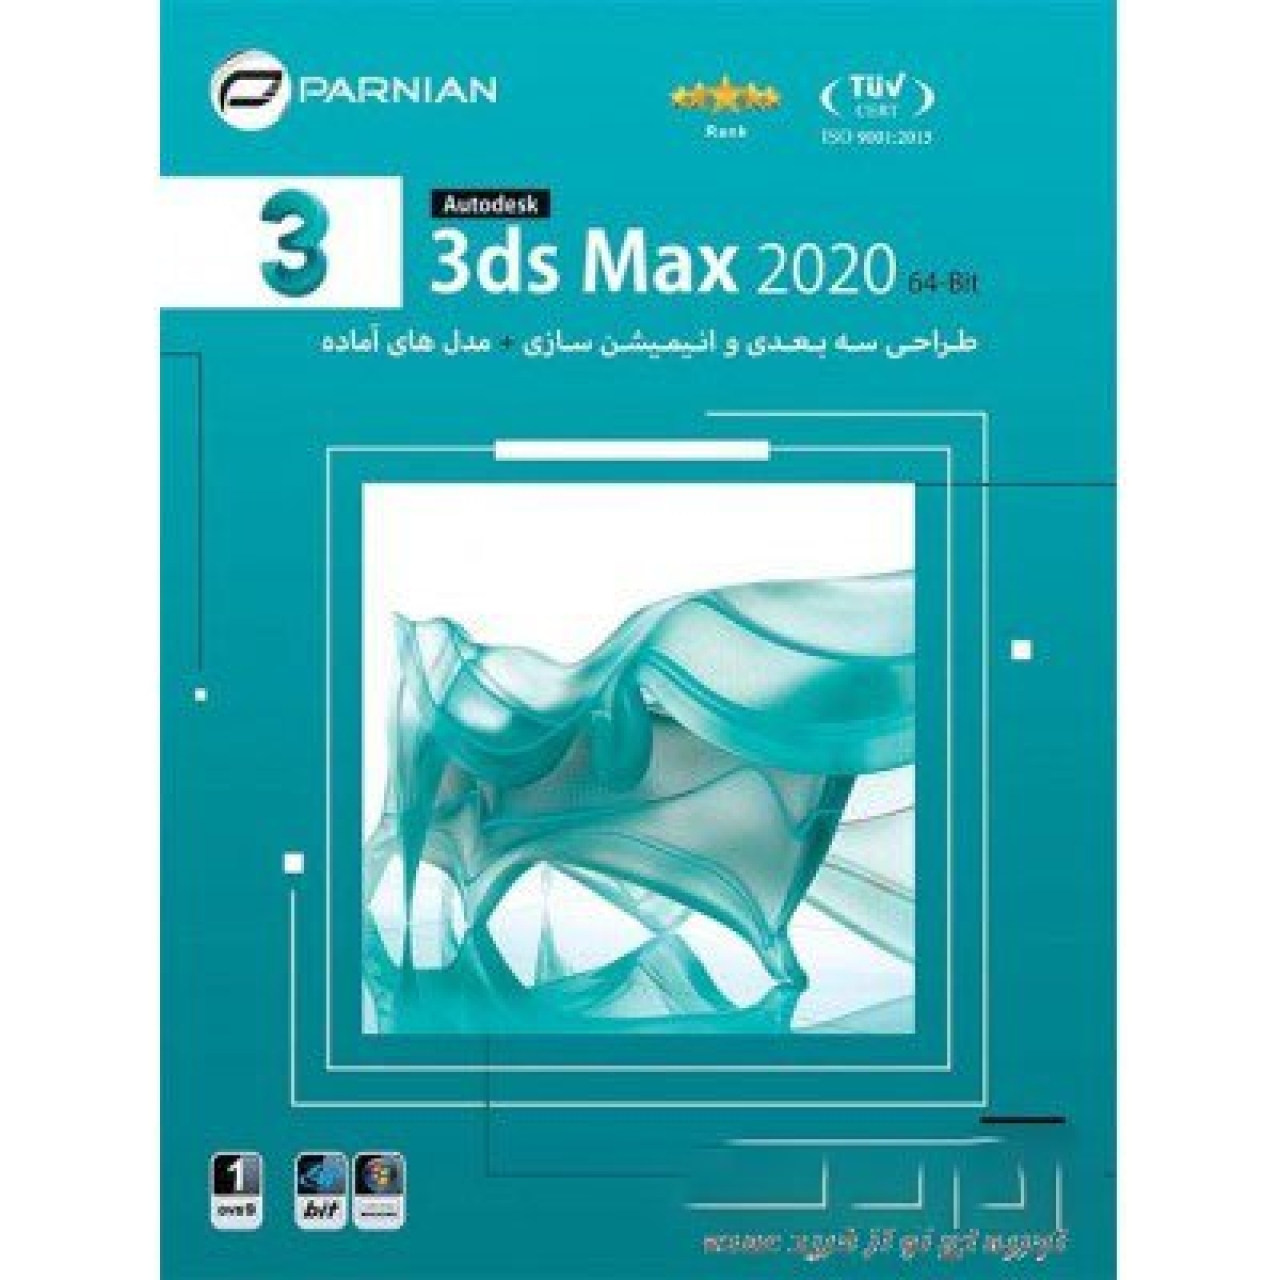 مجموعه نرم افزاری 3ds Max نسخه 2020 نشر پرنیان 64 بیتی